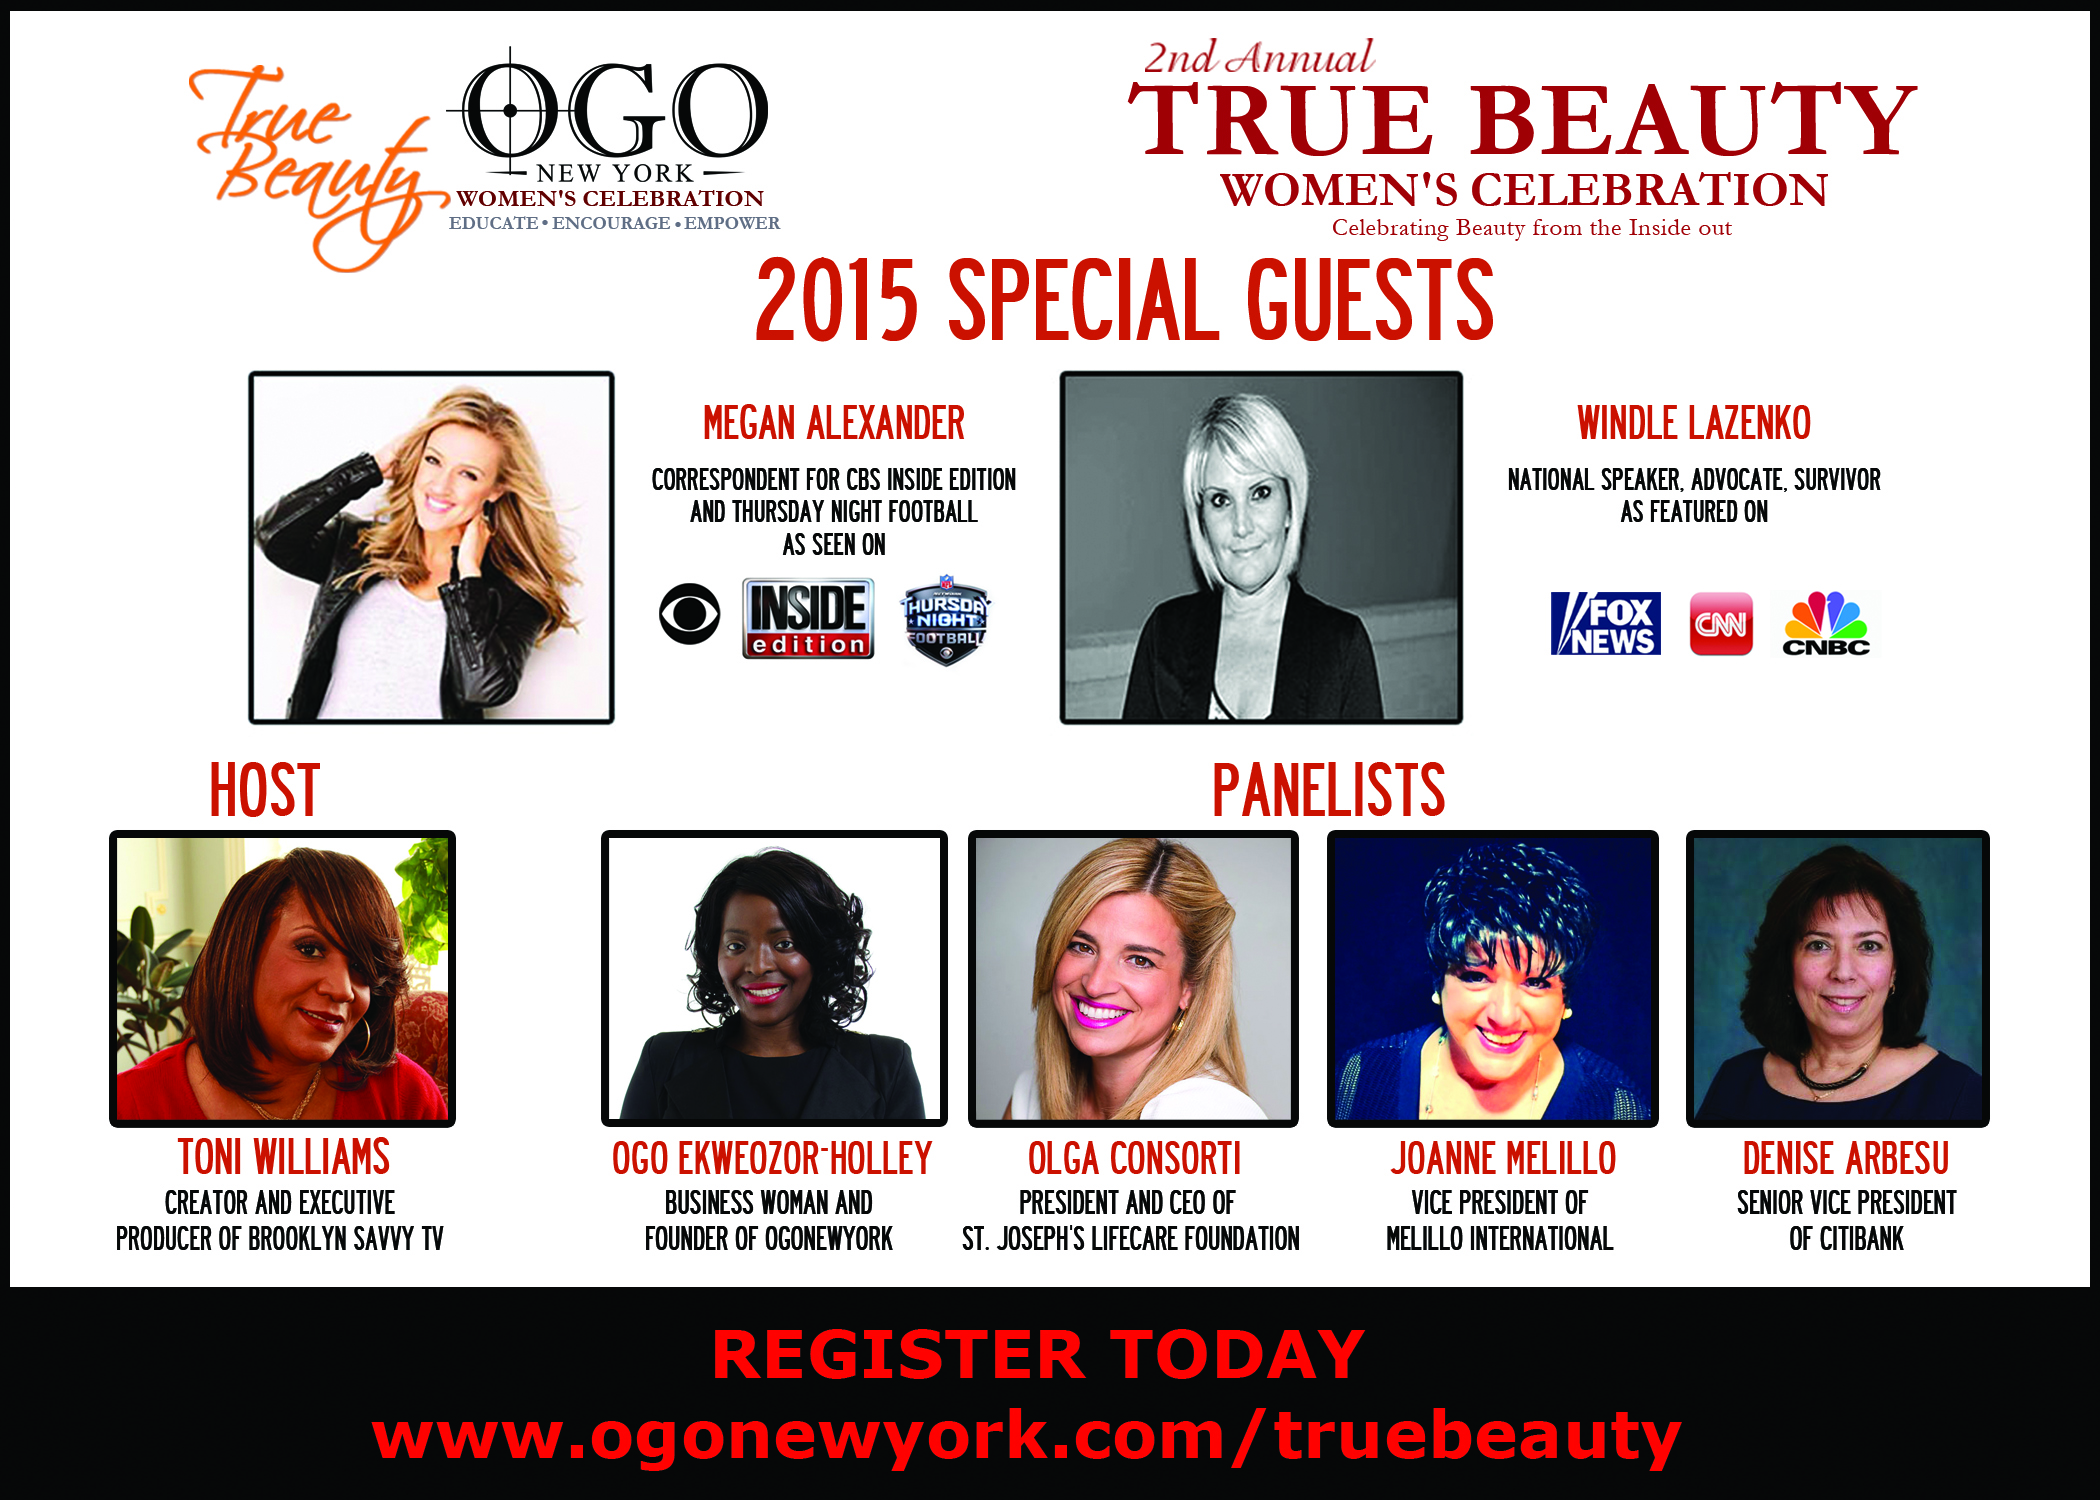 2nd Annual True Beauty Women's Celebration 2015'